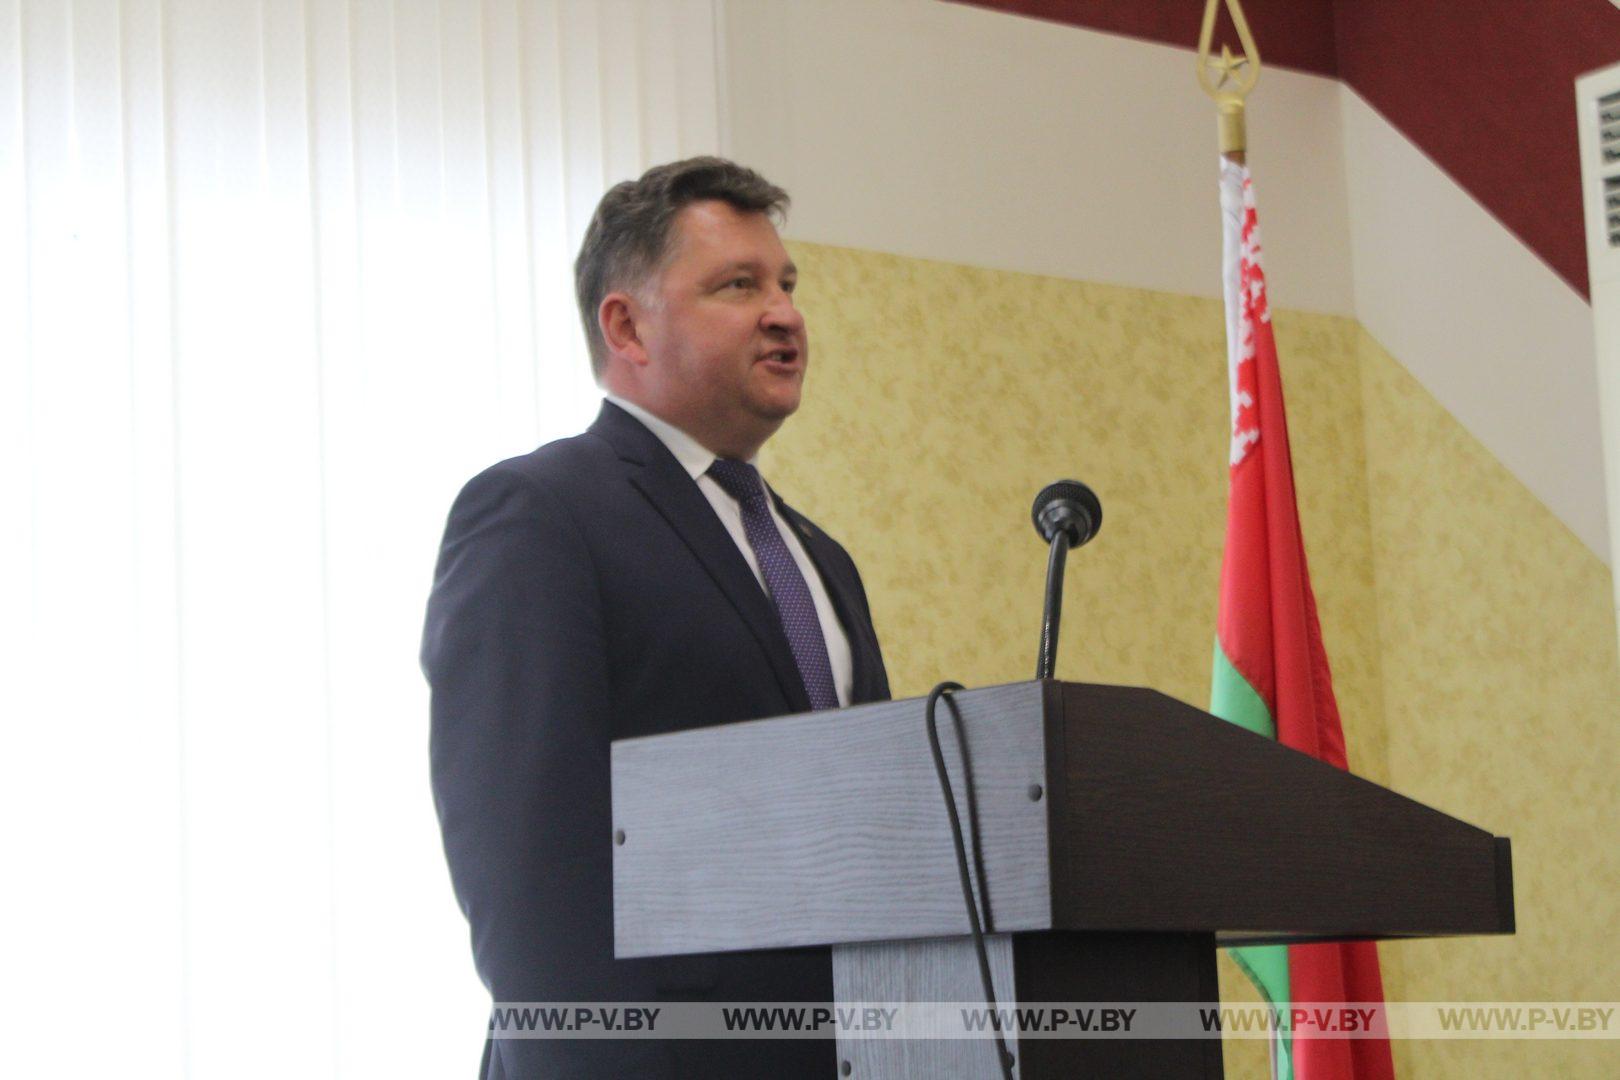 Побывали на присяге, которую принесли восемь иностранцев, пожелавших стать гражданами Республики Беларусь